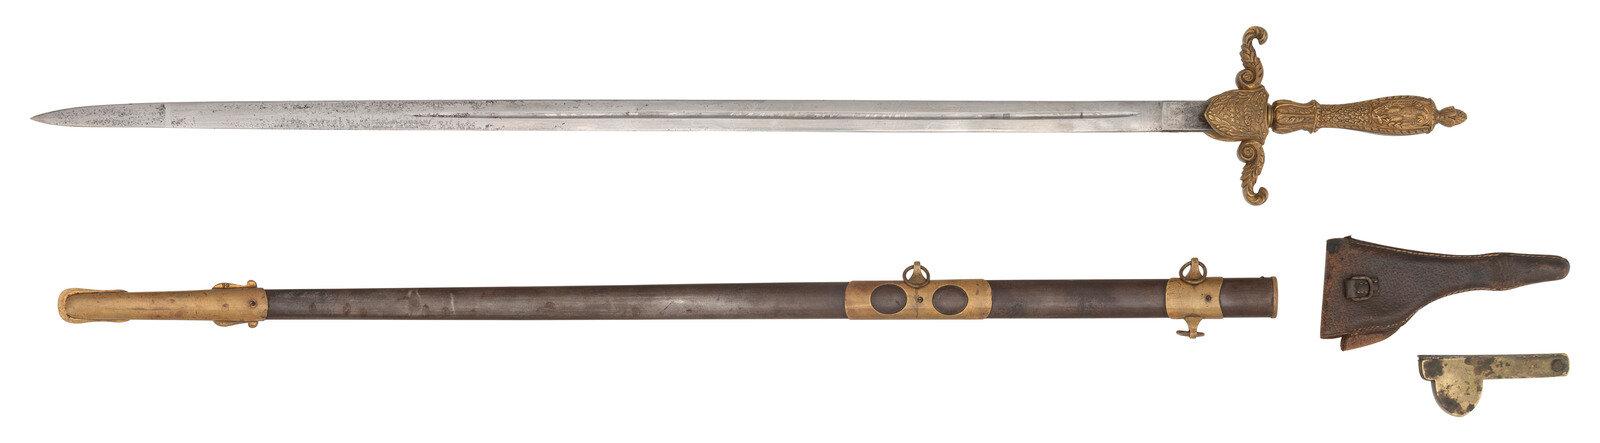 Presentation U.S. Model 1840 Medical Staff Sword of Major John T. Walker - 25th Indiana Infantry